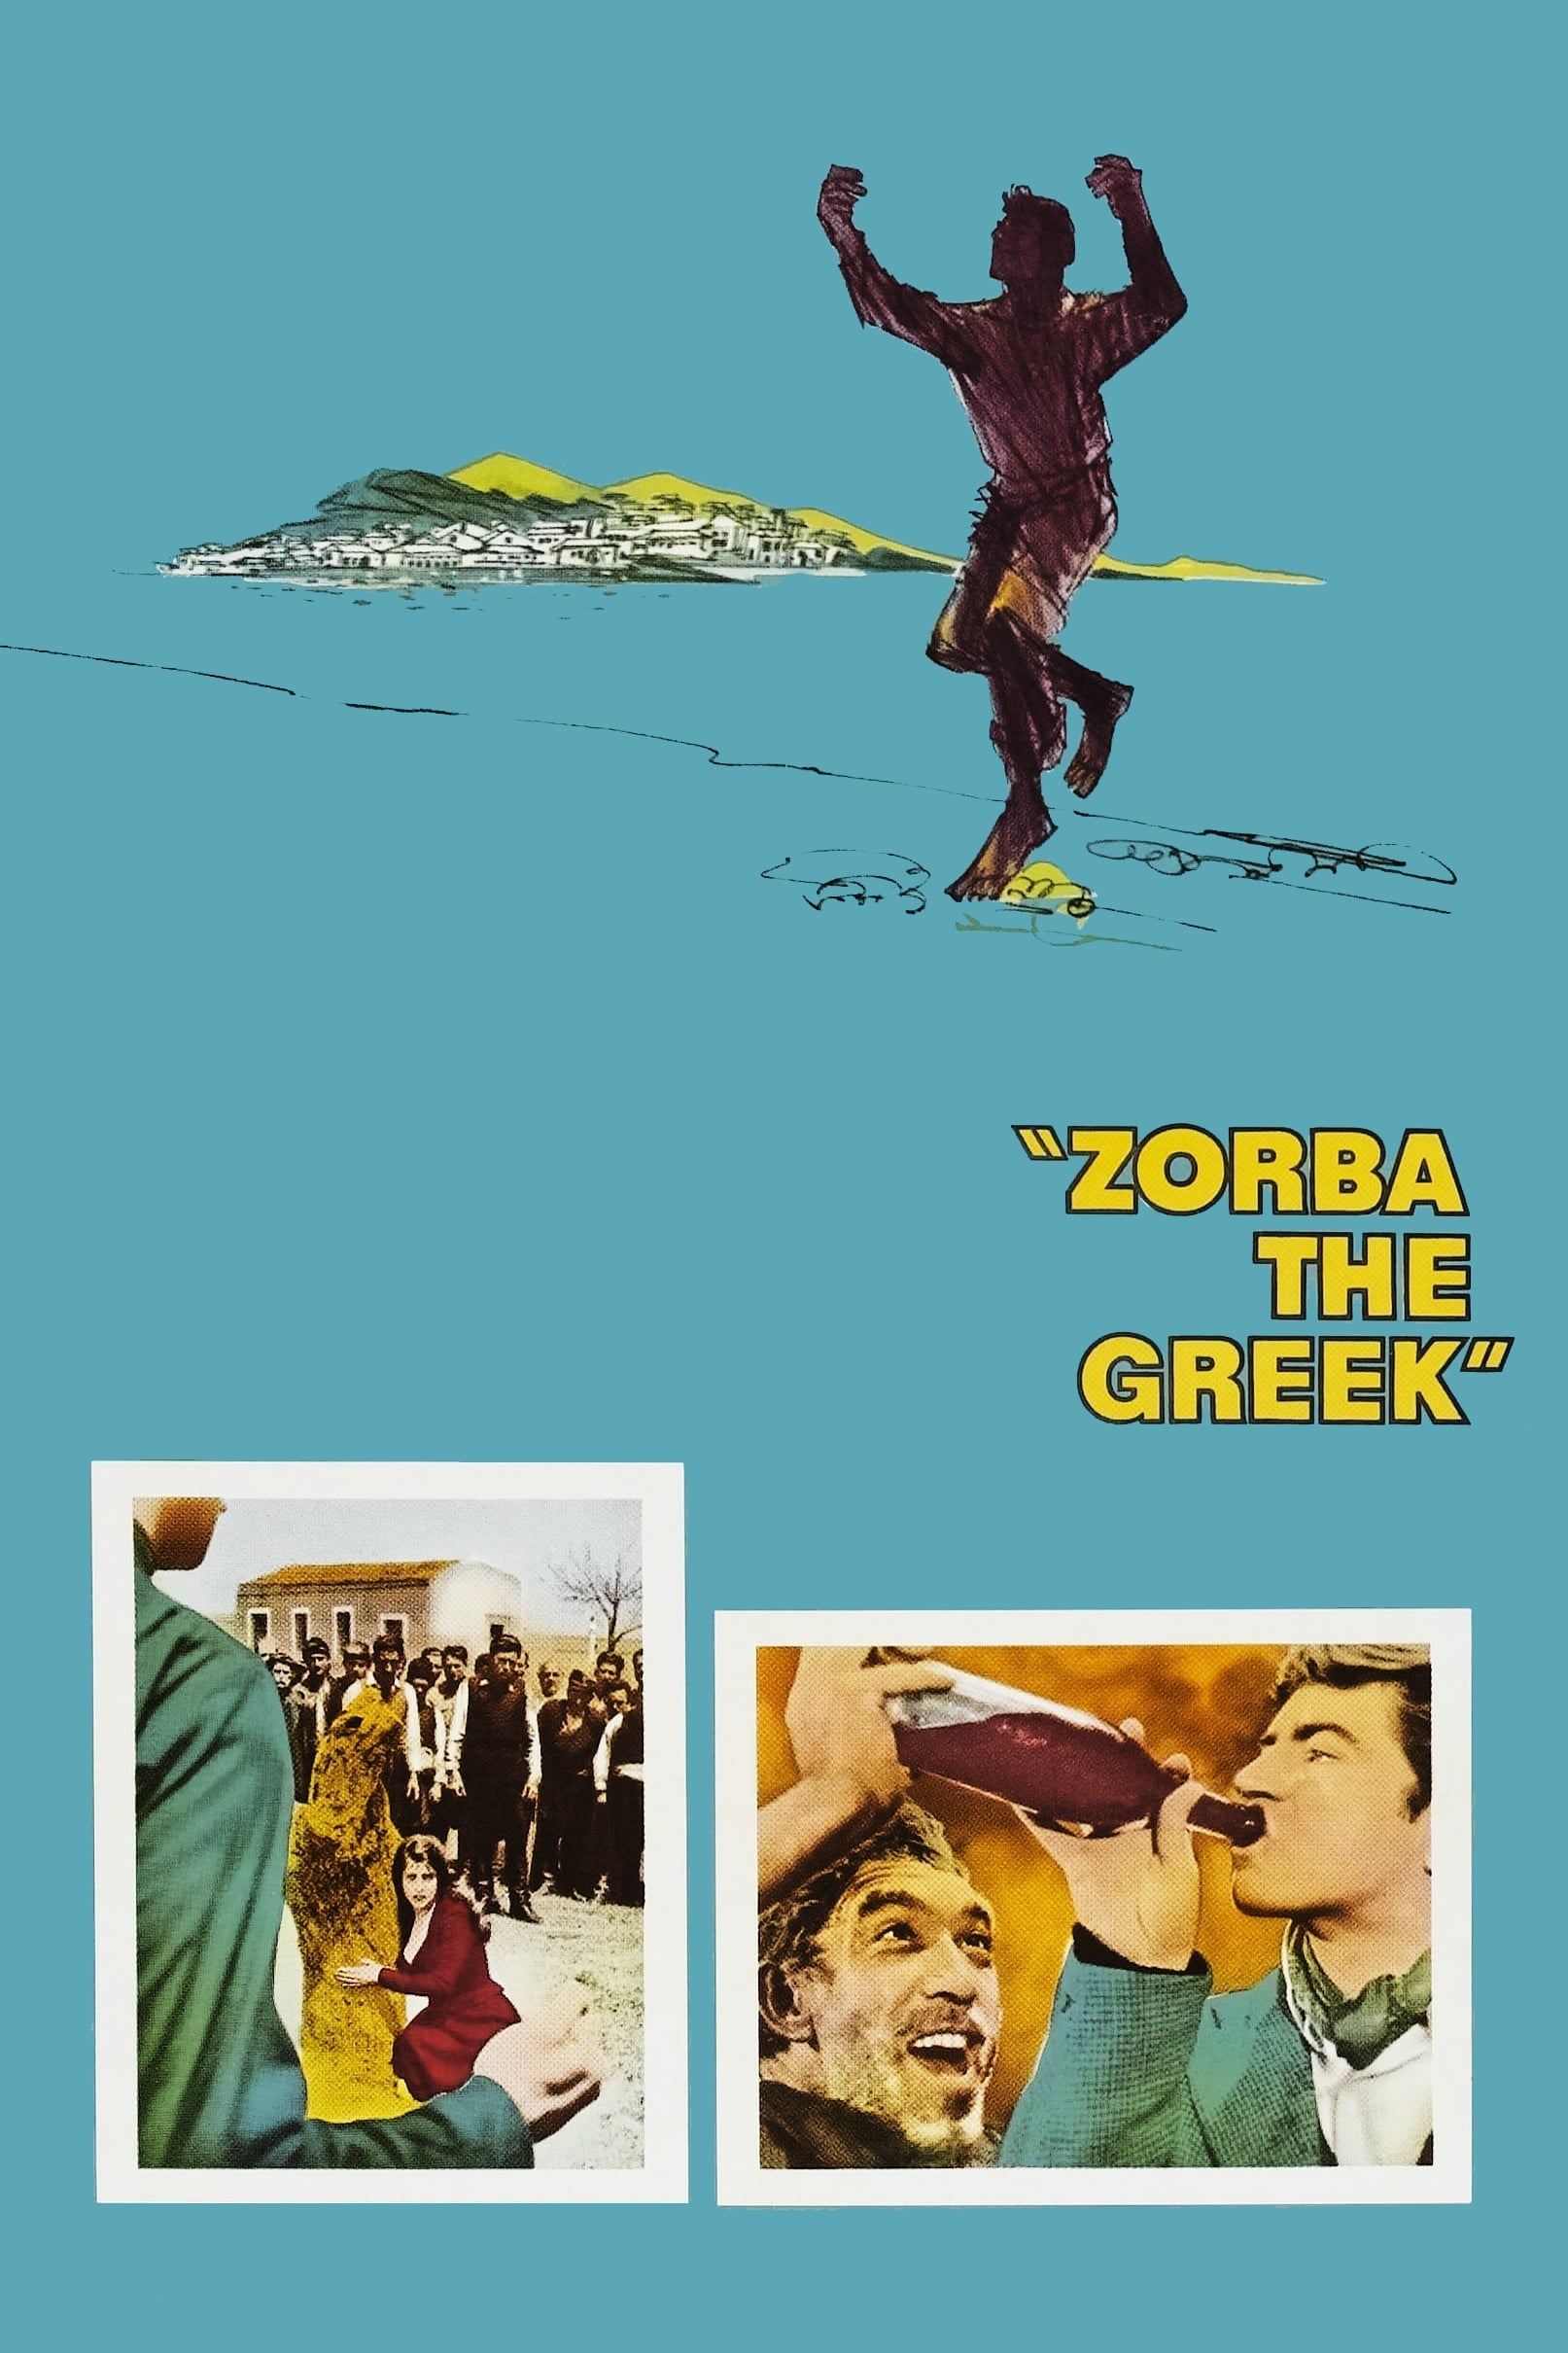 Zorba, O Grego